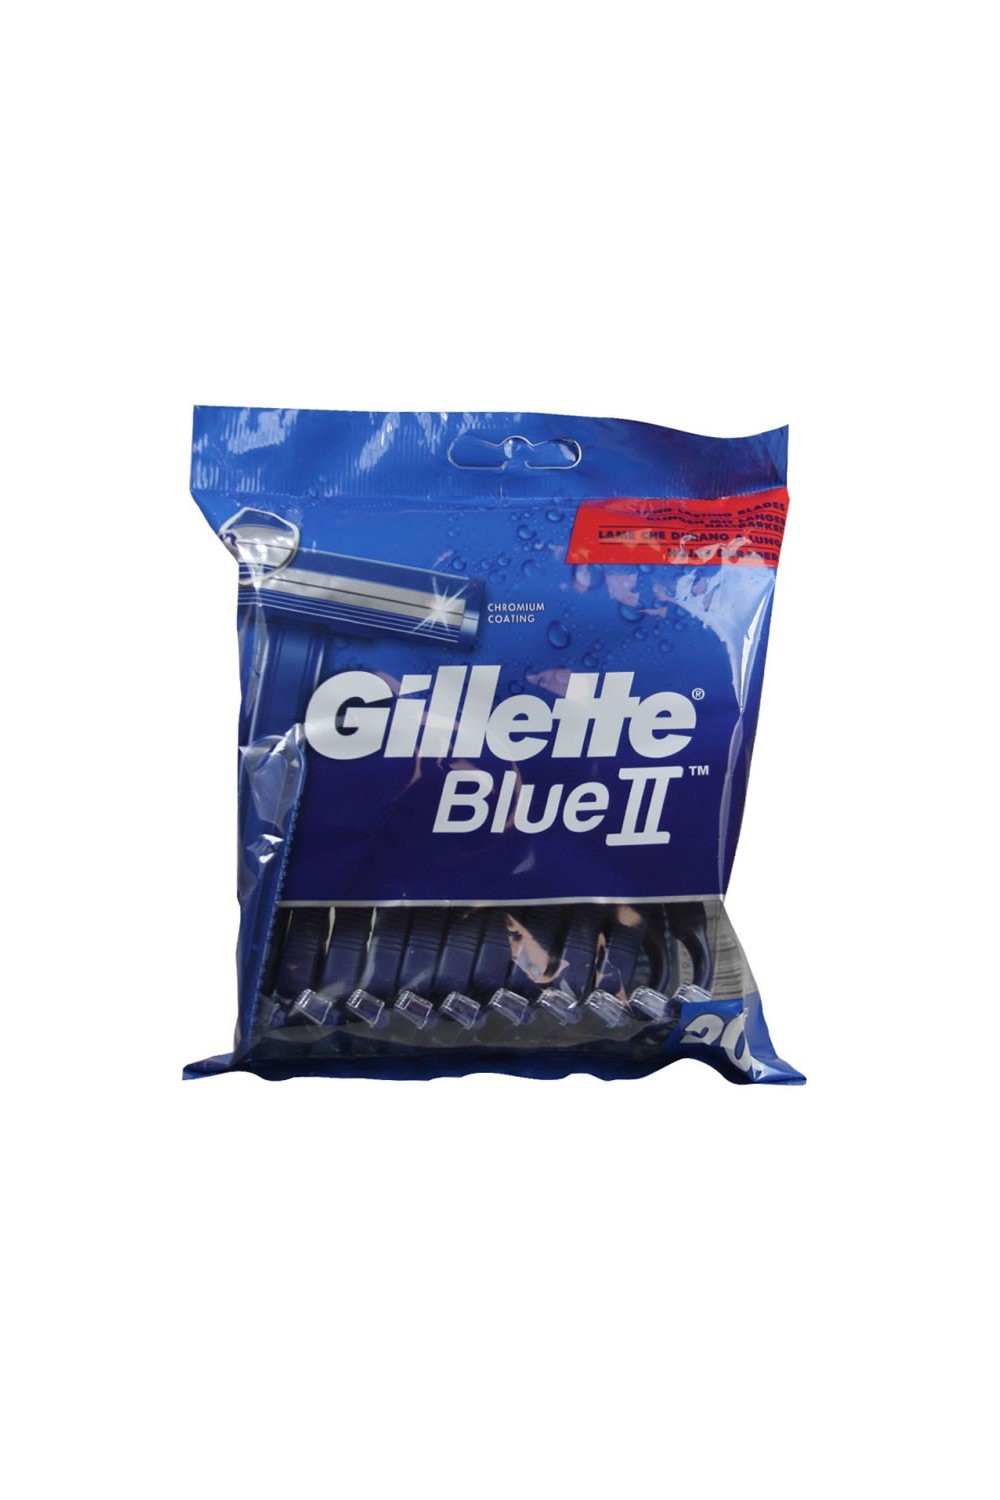 Gillette Blue II Disponsable Razors 20 Units